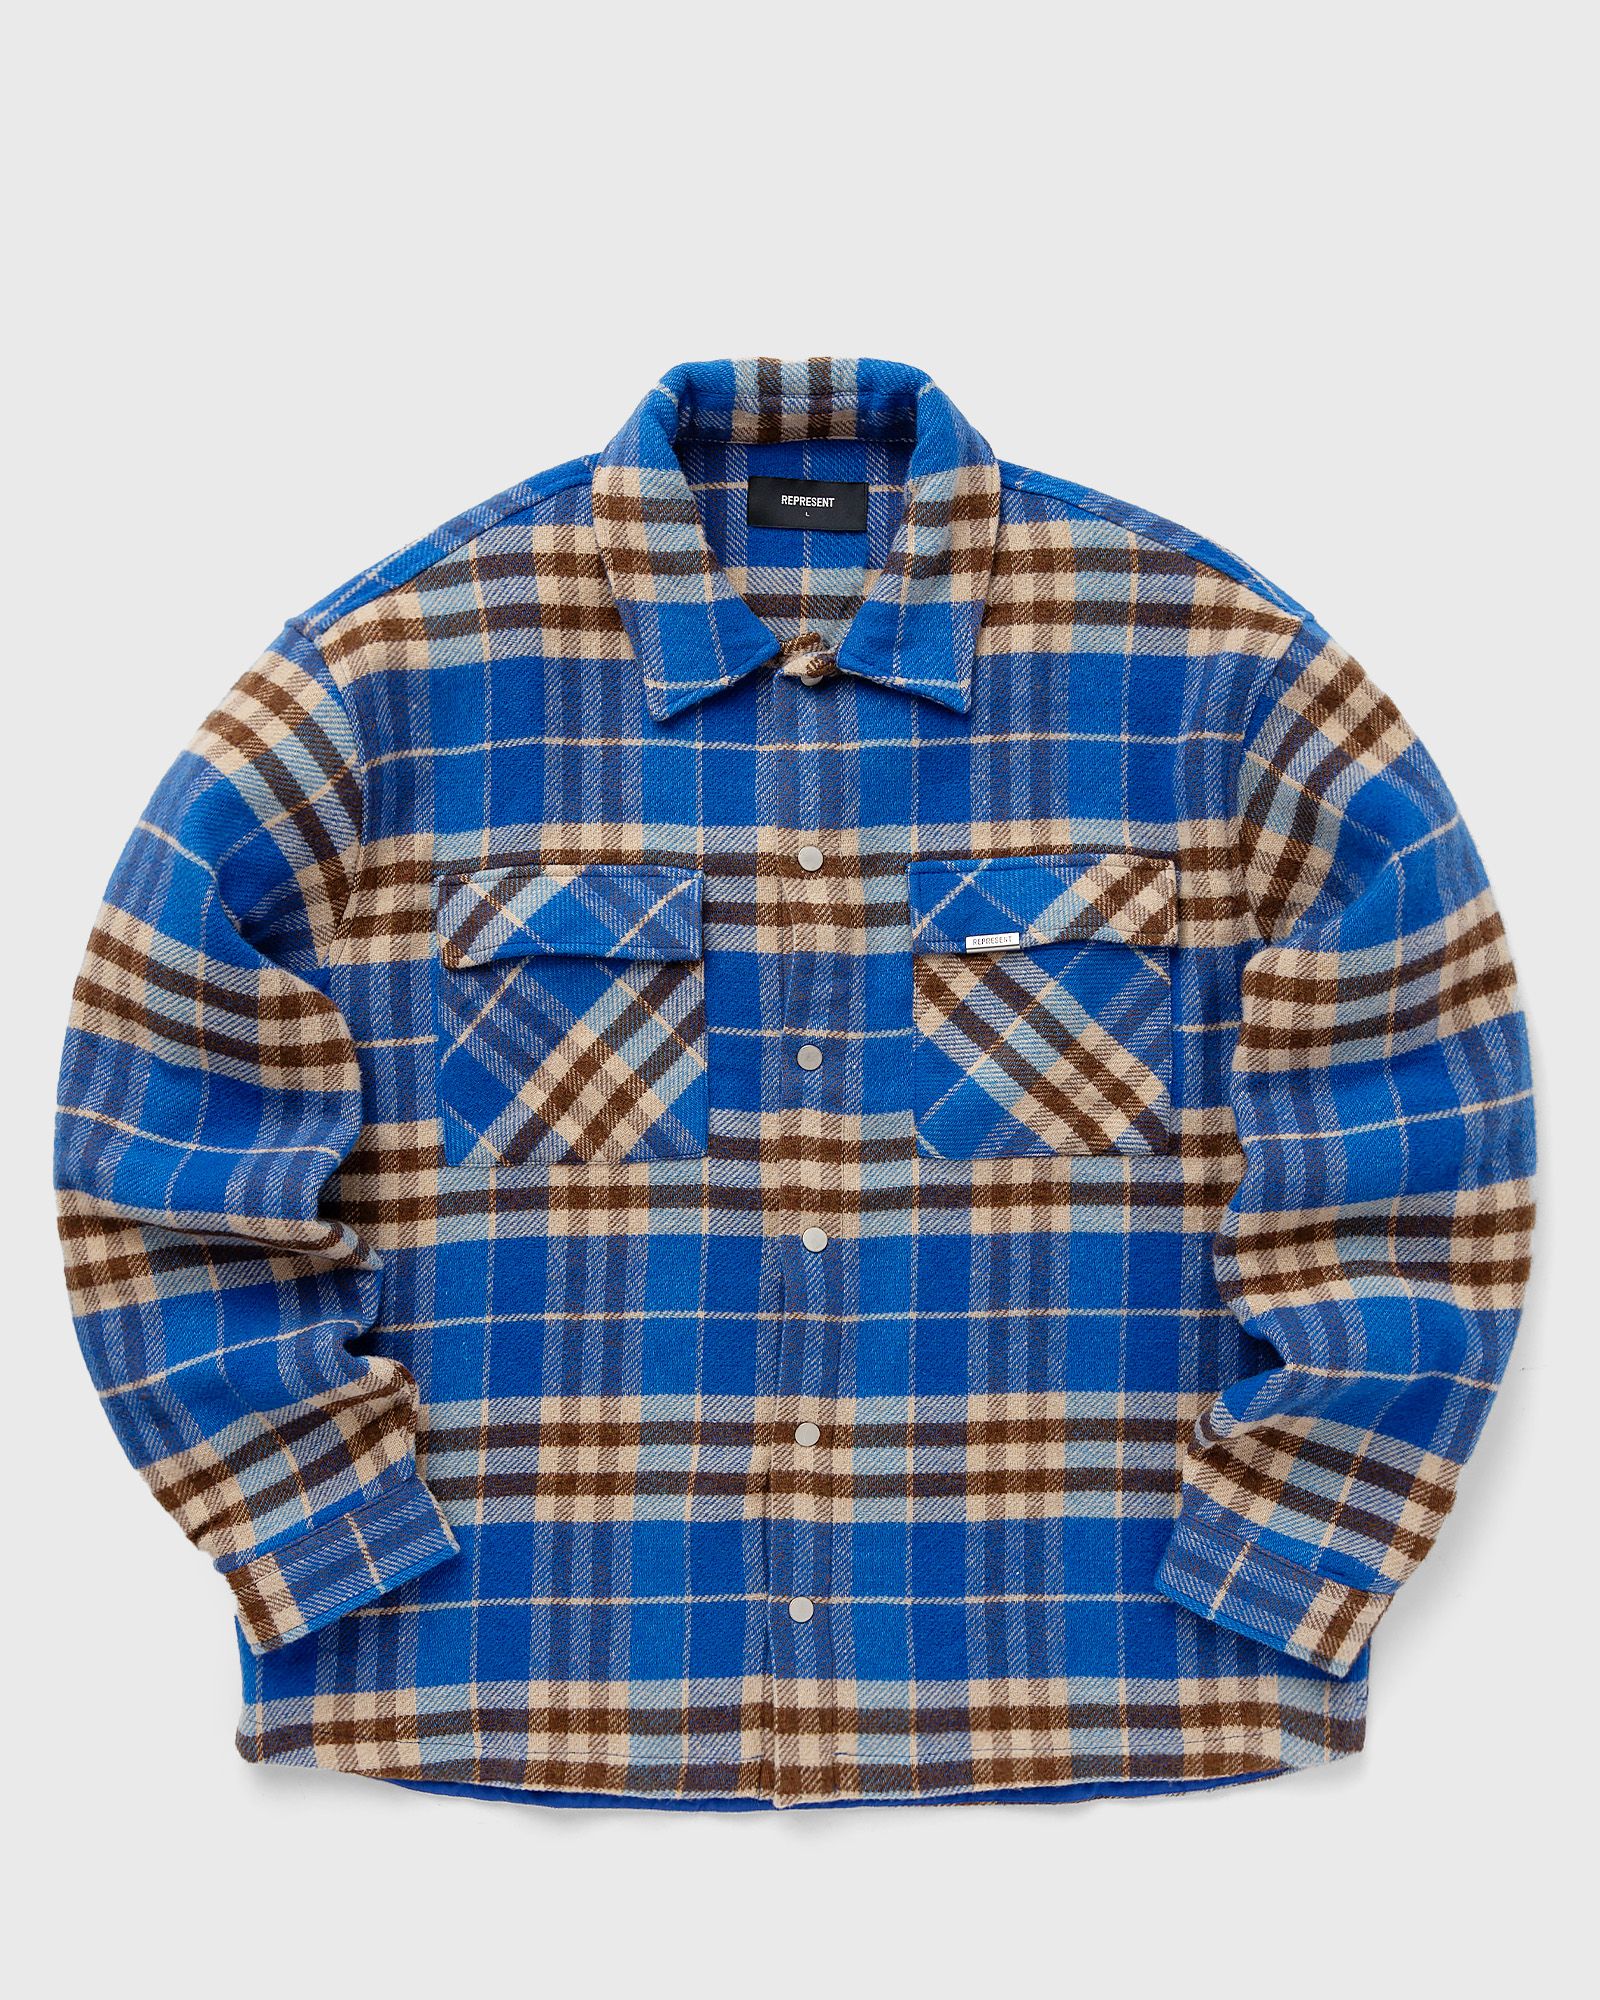 Represent - intial print flannel shirt men overshirts blue|beige in größe:m